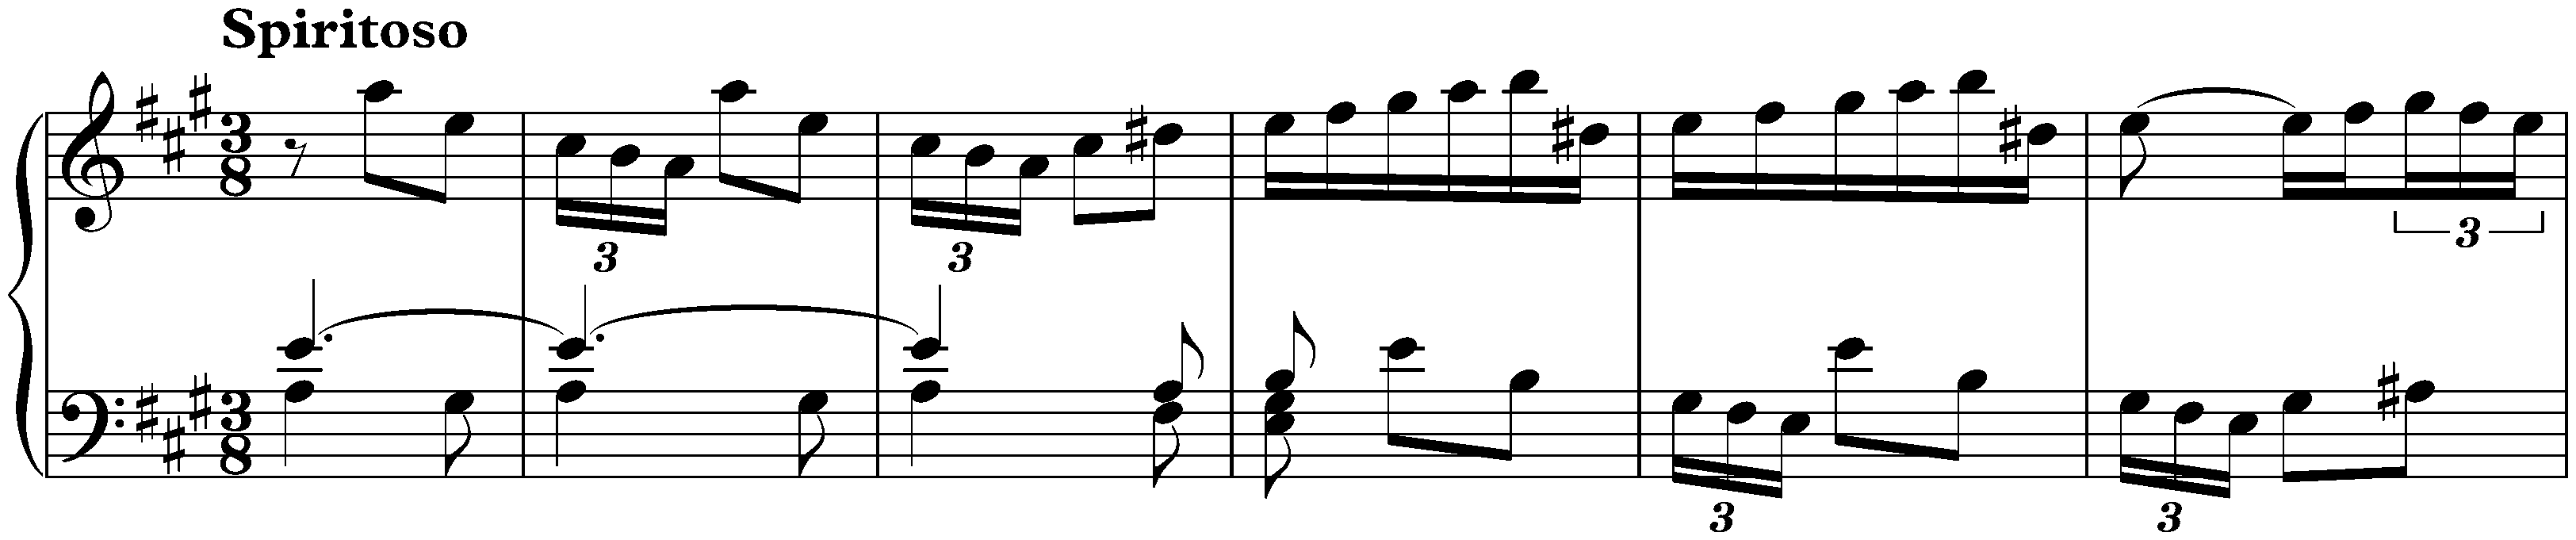 Sonatas found in London; 1. A major, 2. Spiritoso